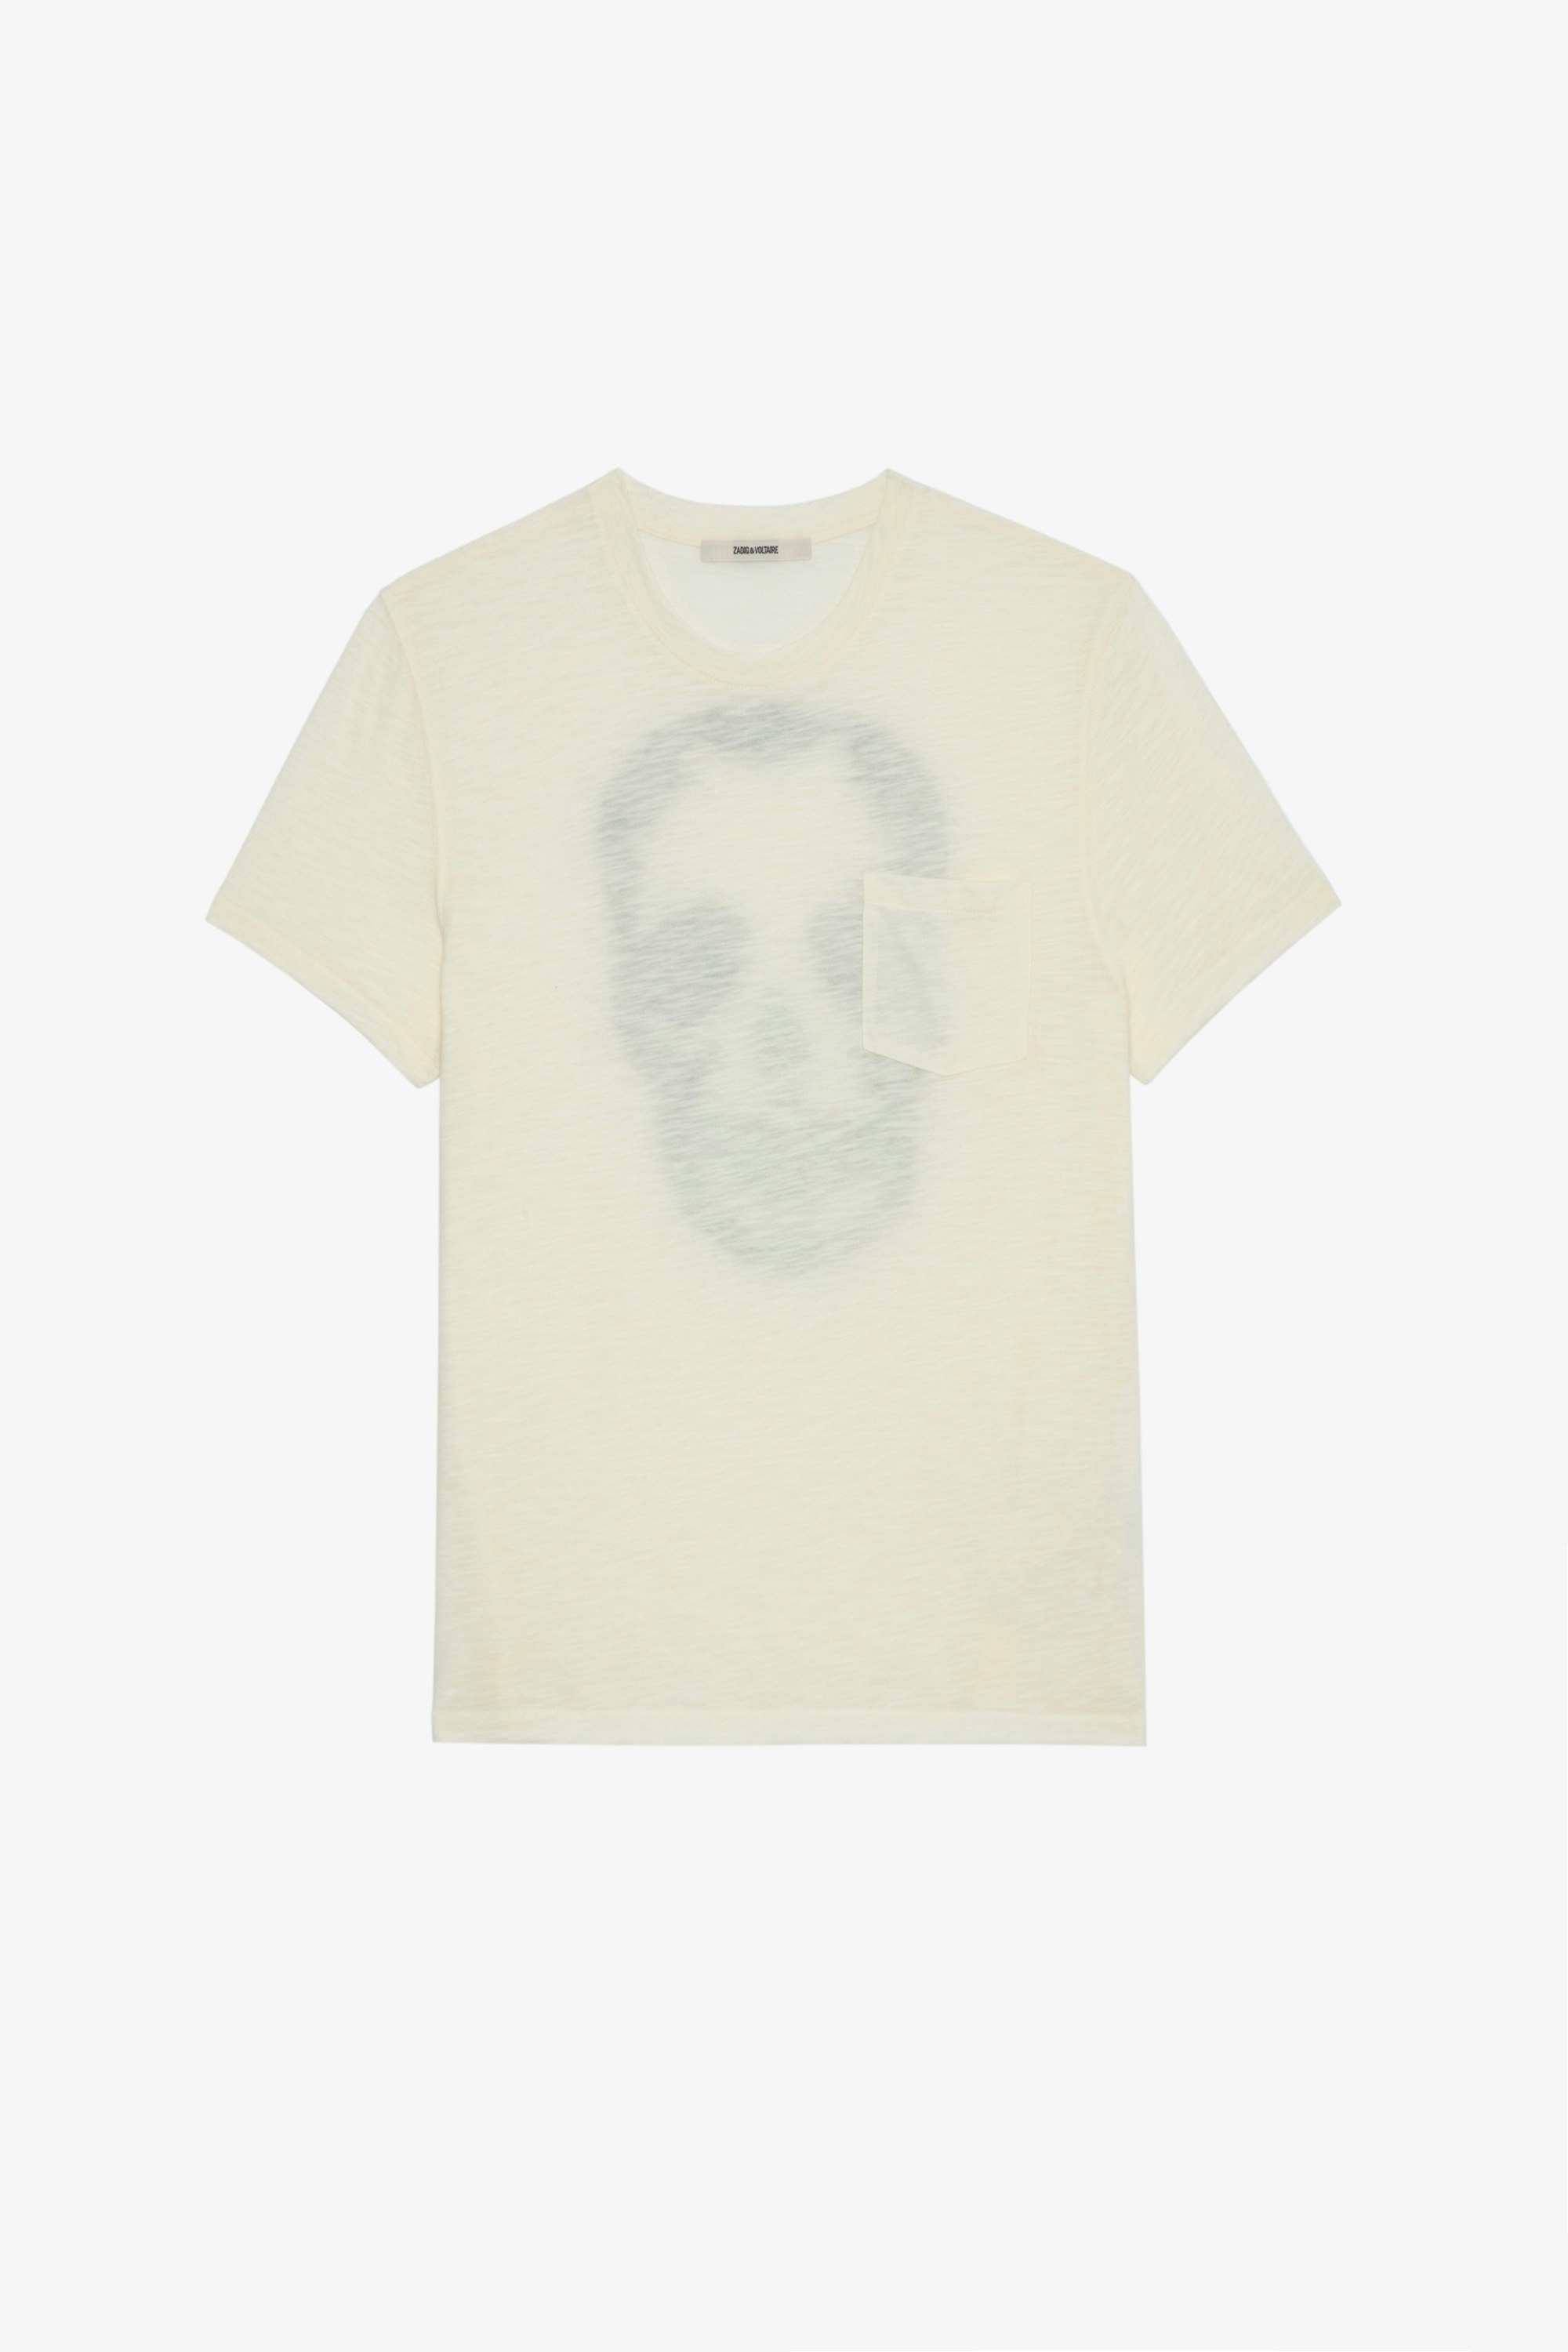 Camiseta Stockholm Jaspeada Camiseta de hombre de algodón jaspeado crudo adornada con una calavera en la espalda